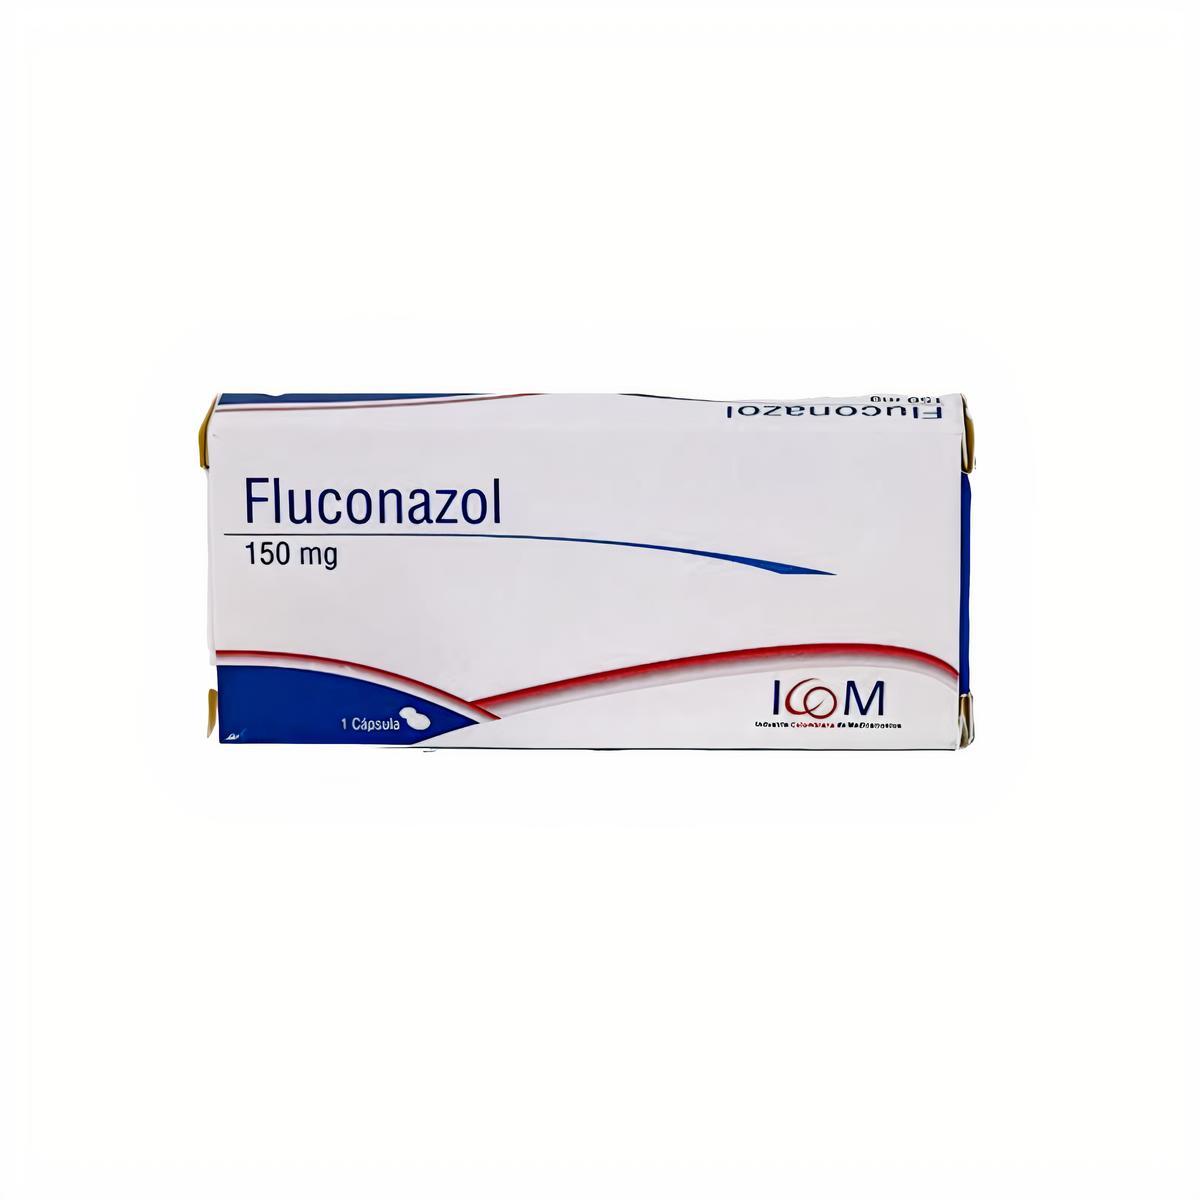 Fluconazol Icom (150 Mg) Precio a Domicilio